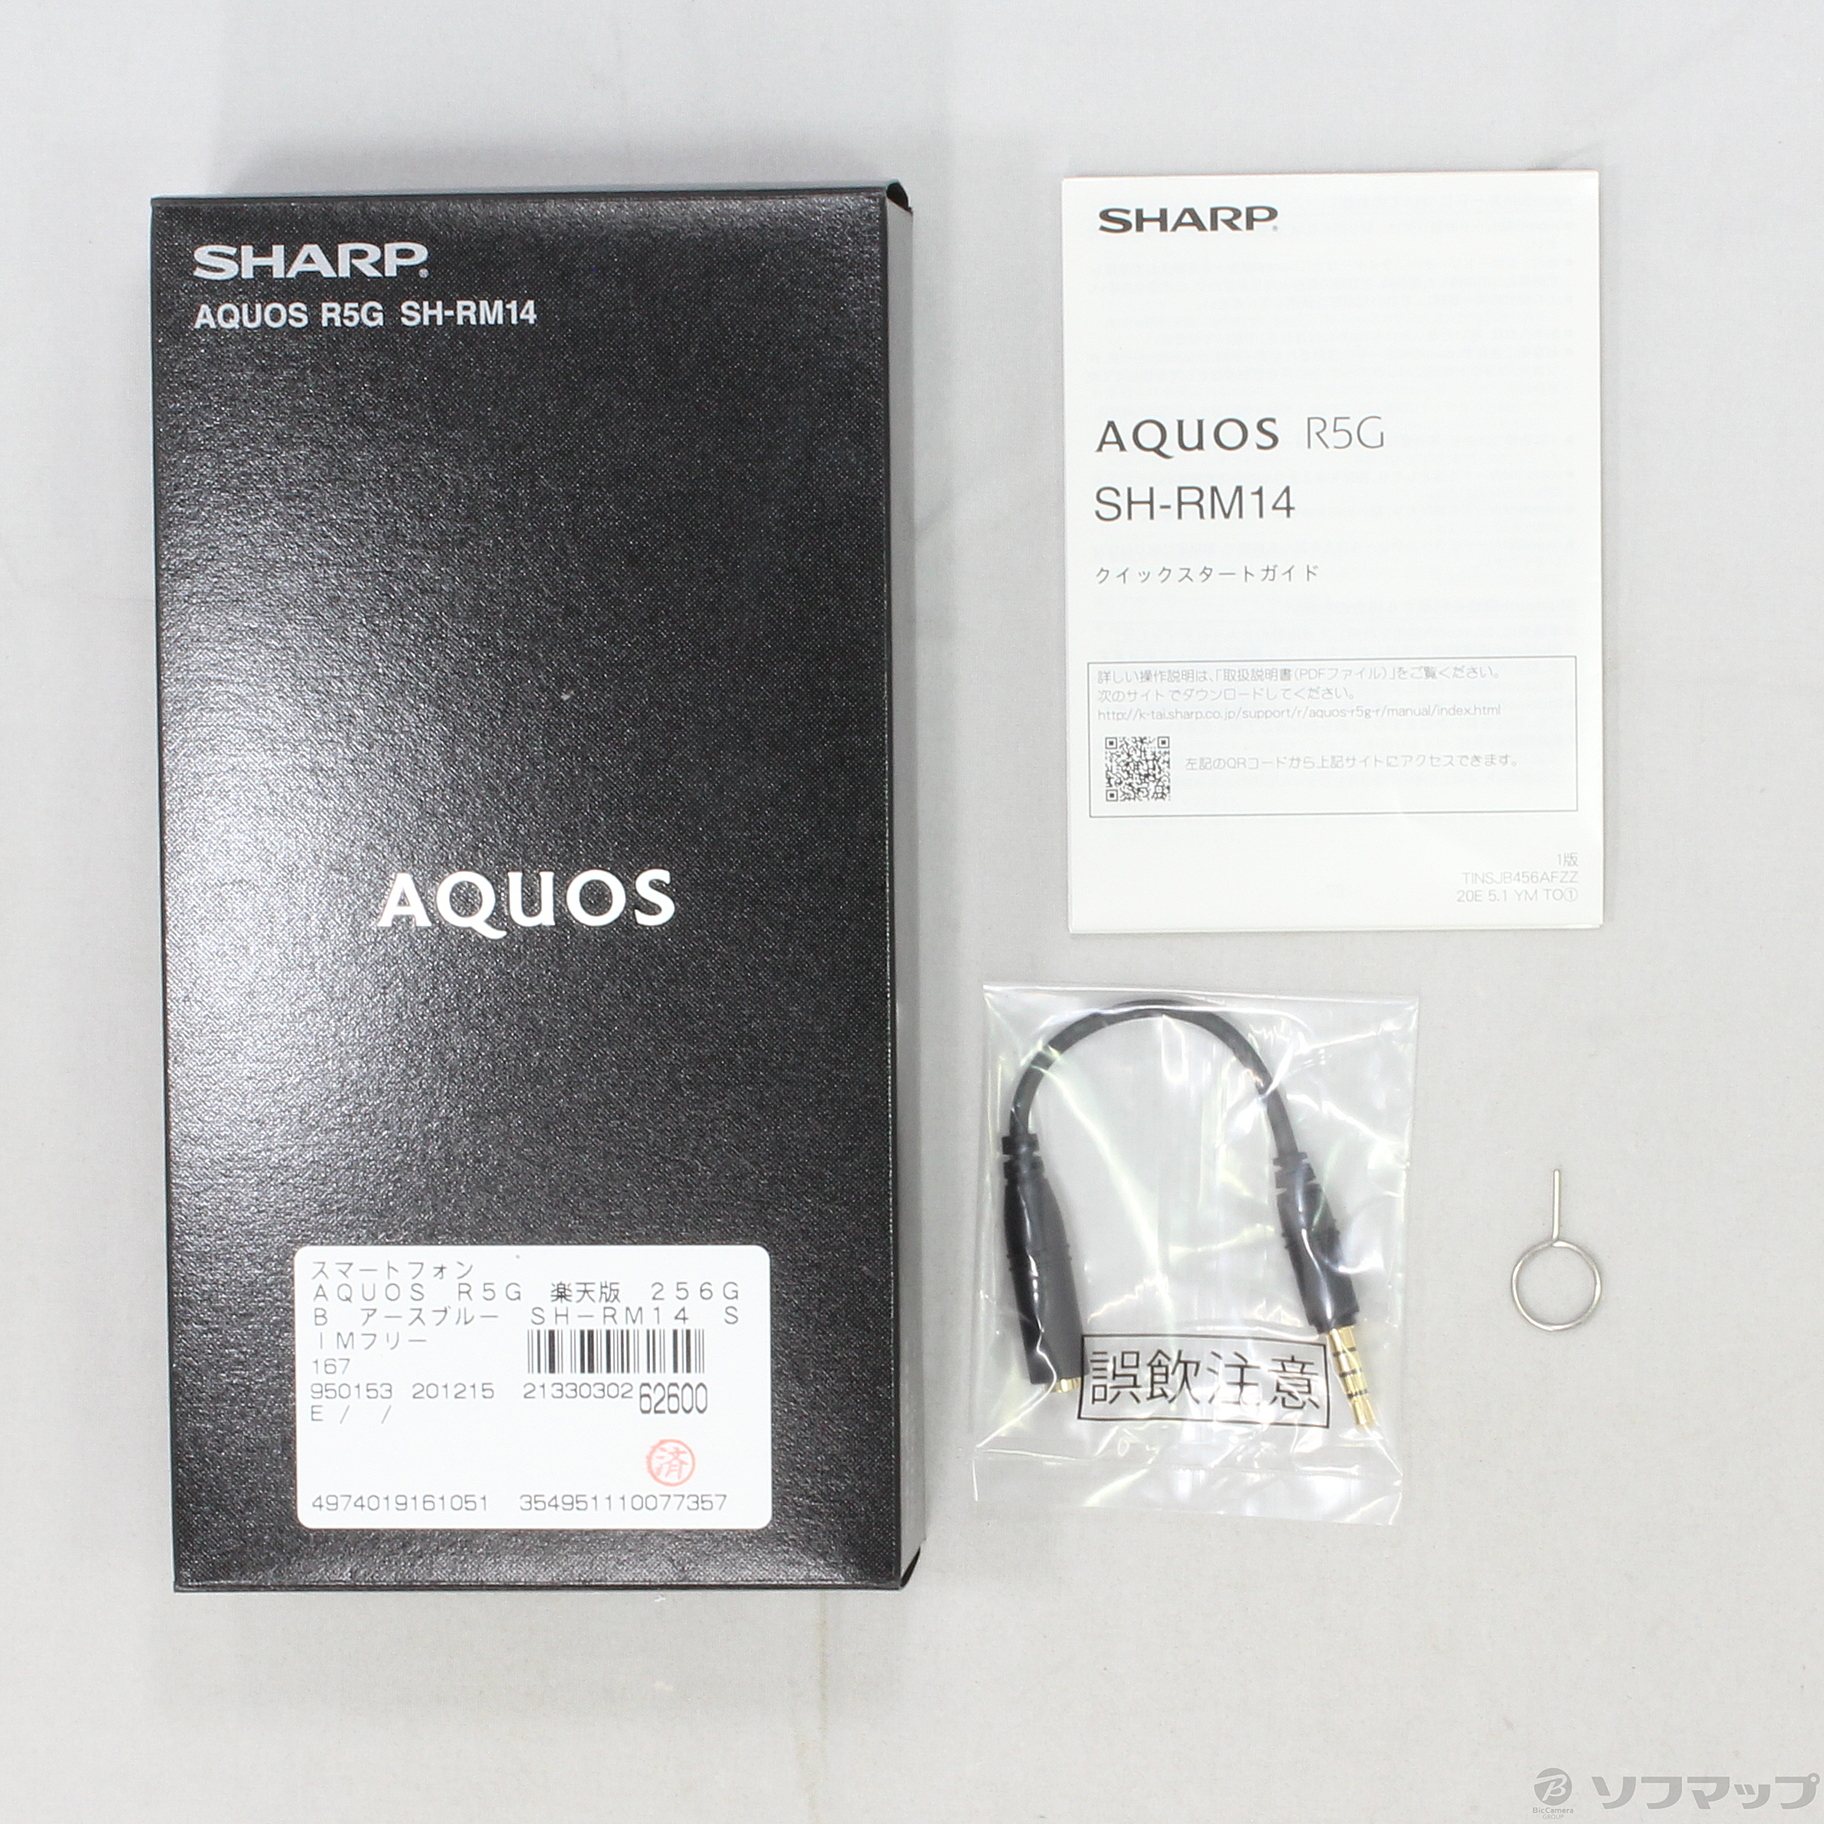 AQUOS R5G 楽天版 256GB アースブルー SH-RM14 SIMフリー